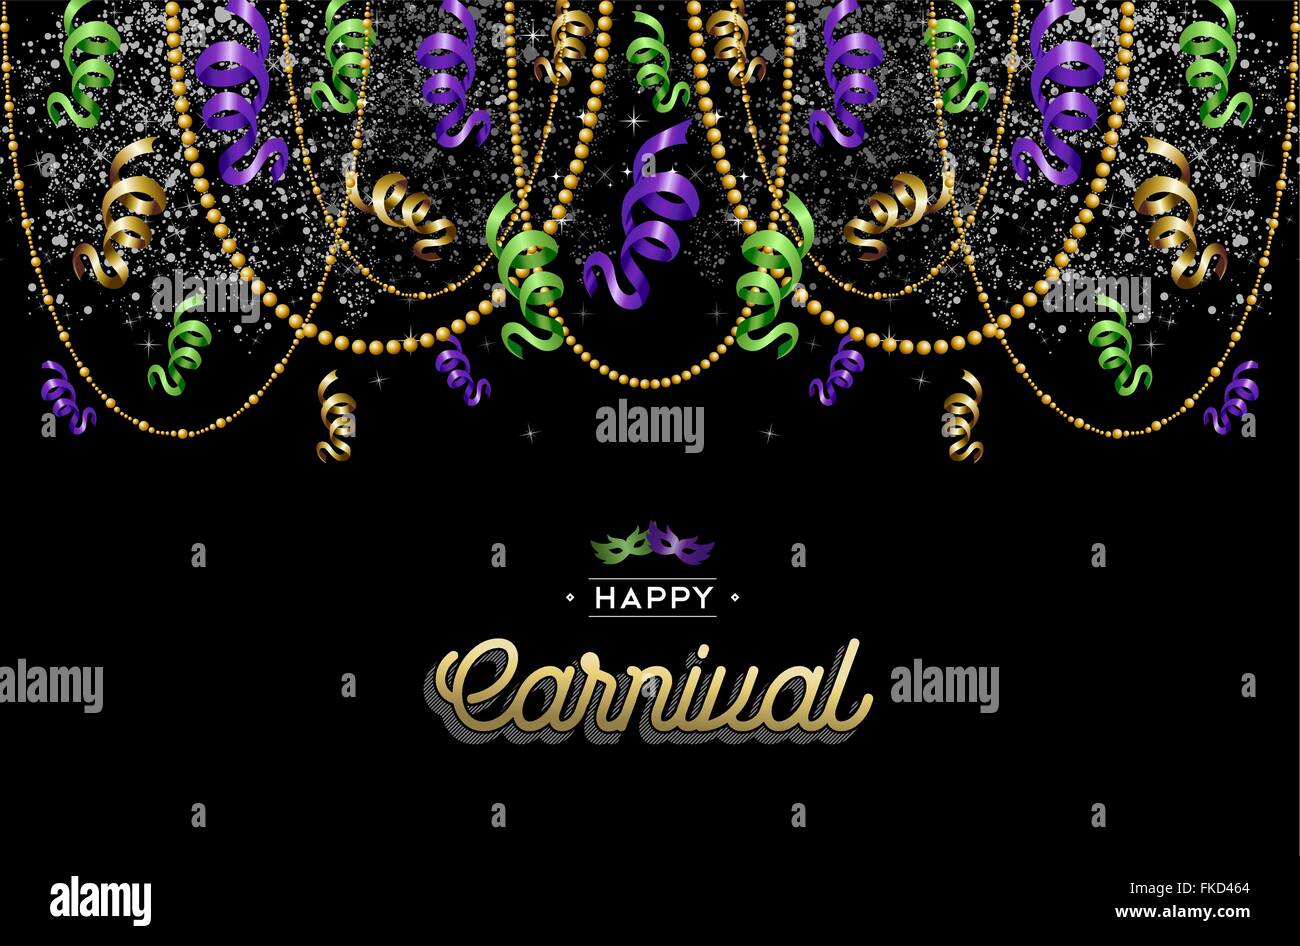 Carnaval haut en couleurs décoration fond avec étiquette de texte et partie de masques. Vecteur EPS10. Illustration de Vecteur